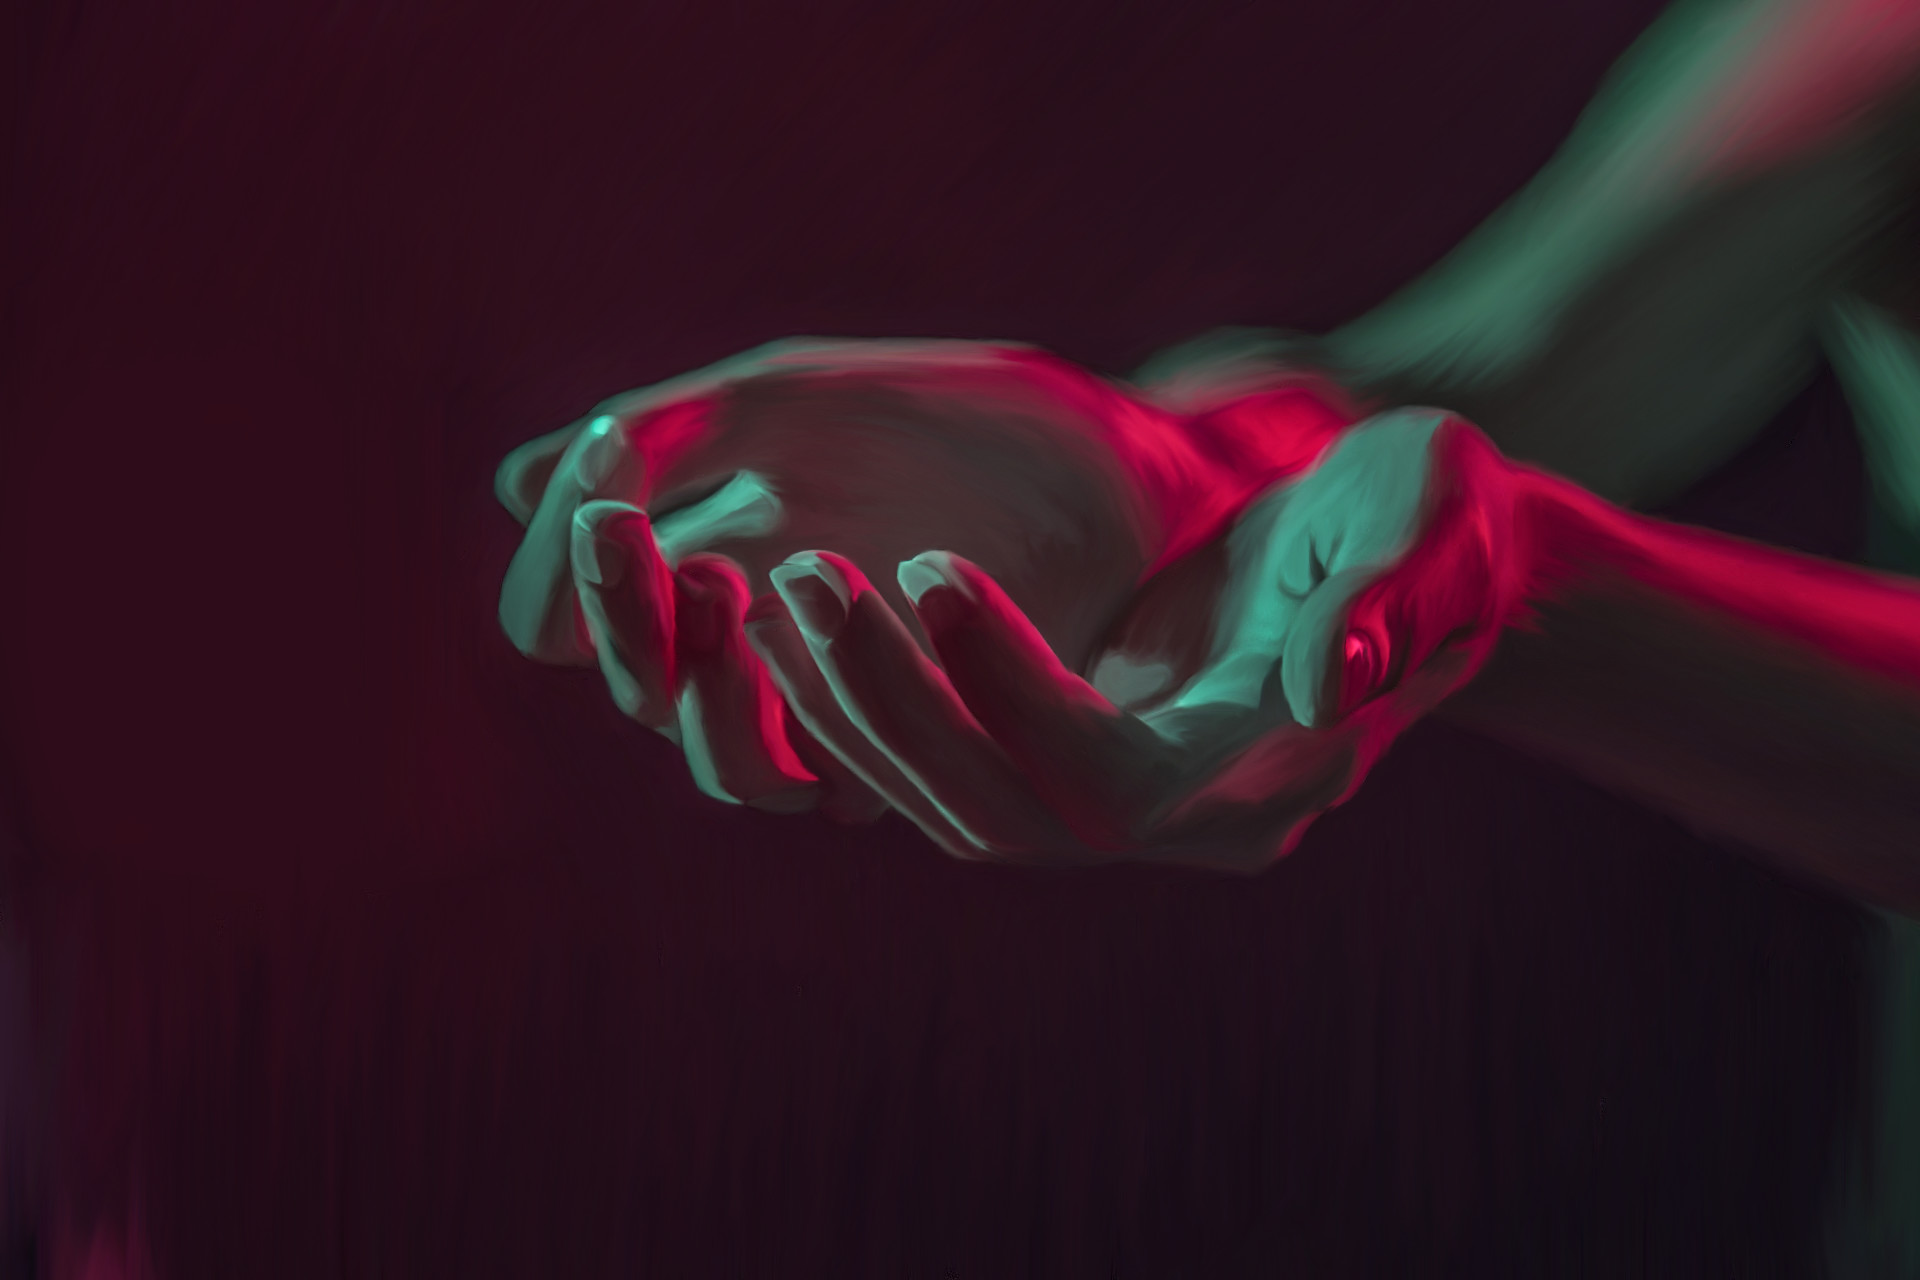 ArtStation - Neon Hands